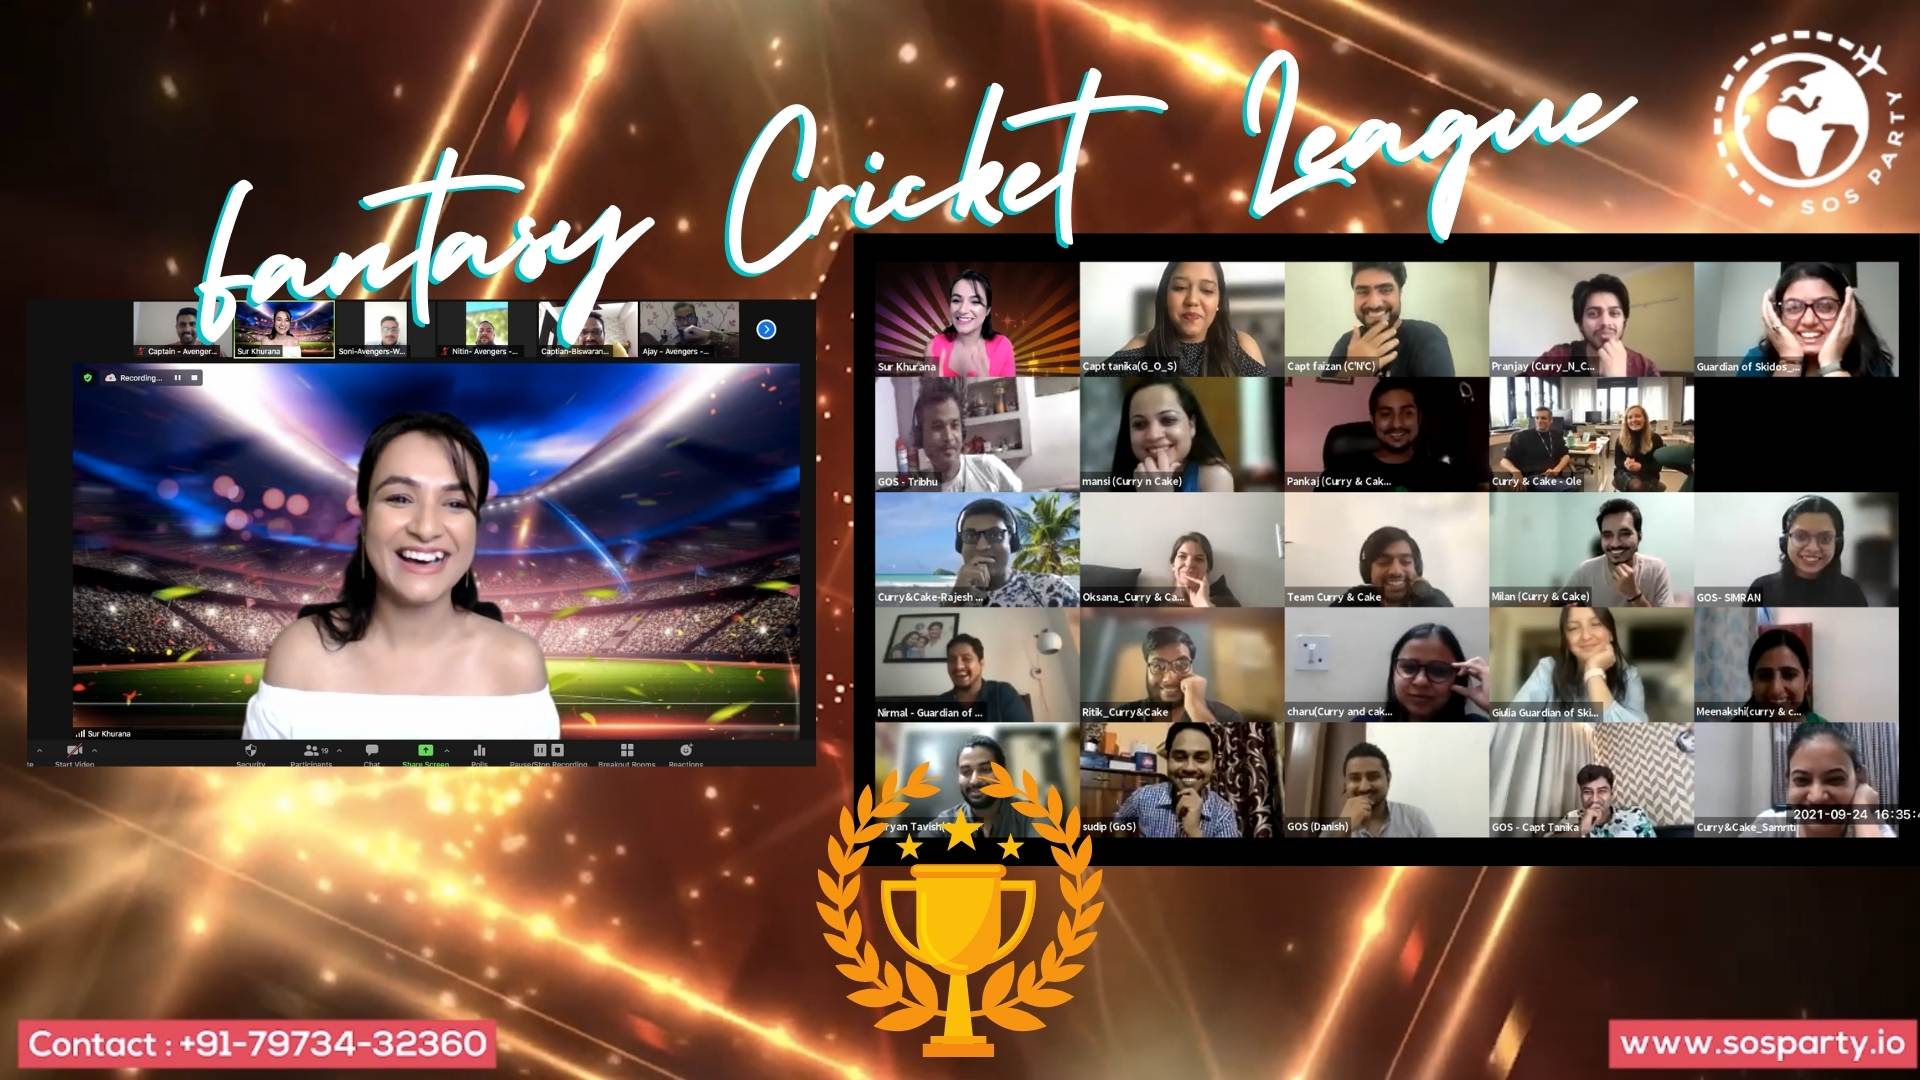 IPL Fantasy Cricket: Virtual Team Building Activity